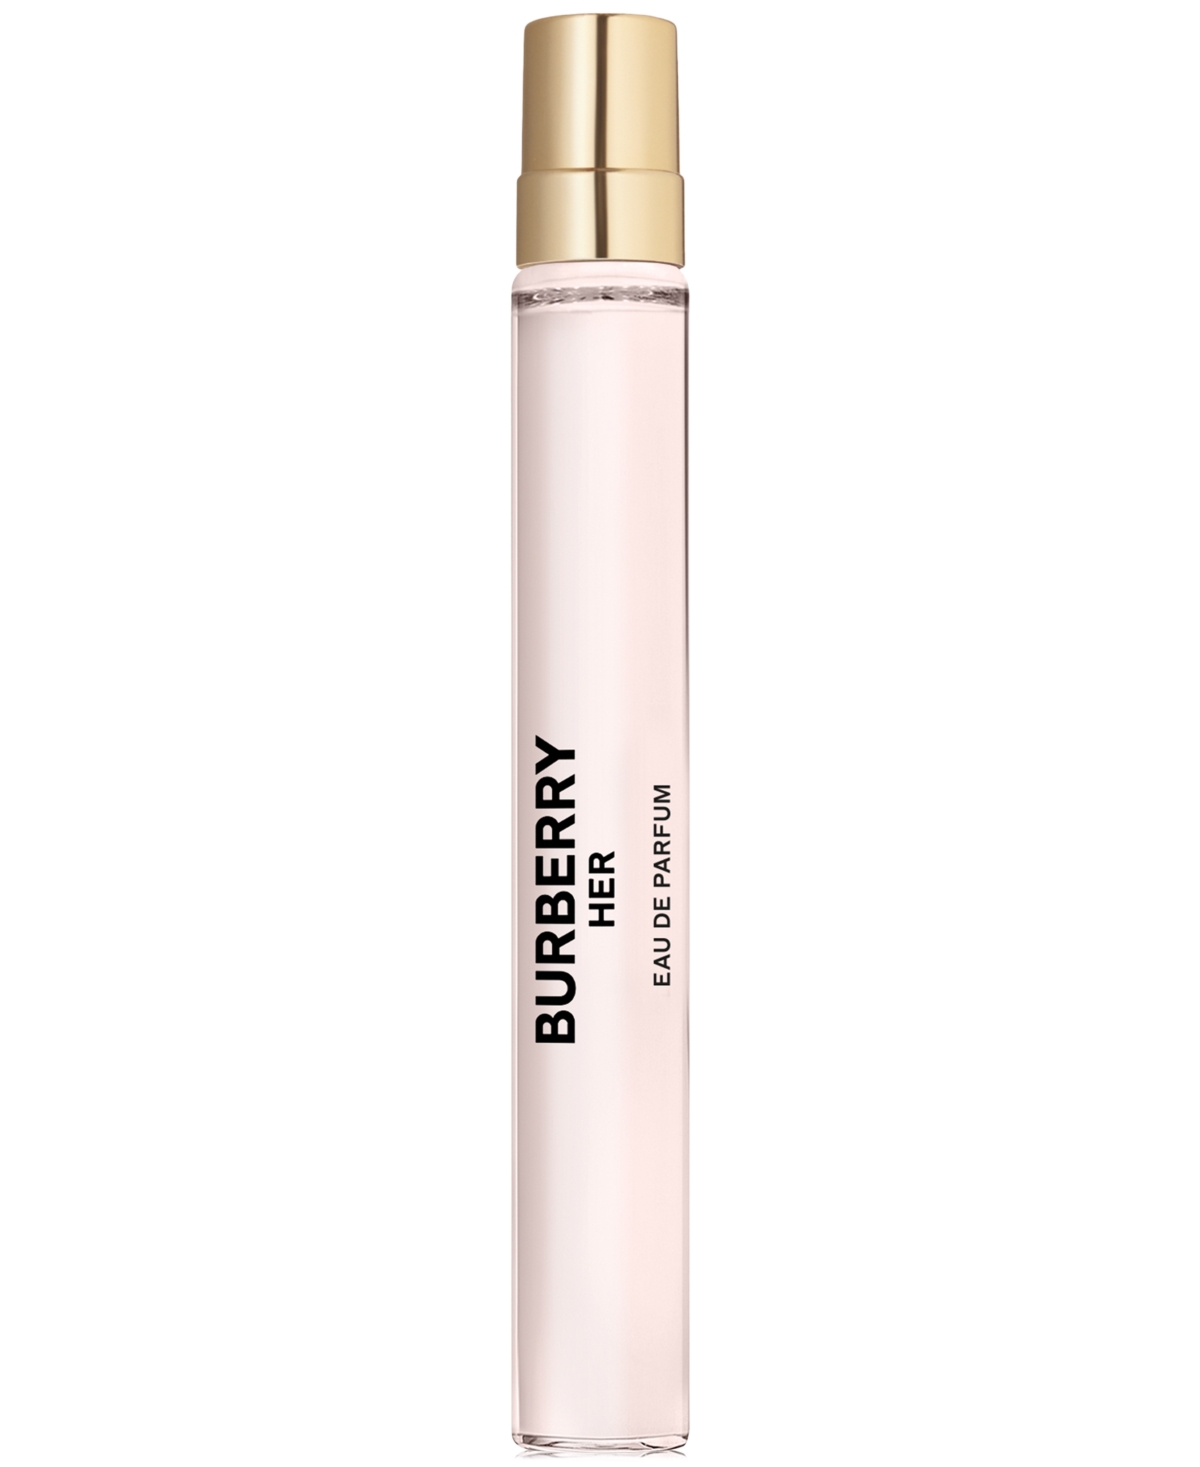 Burberry Her Eau De Parfum Travel Spray 0.33 oz / 10 ml Eau De Parfum Spray